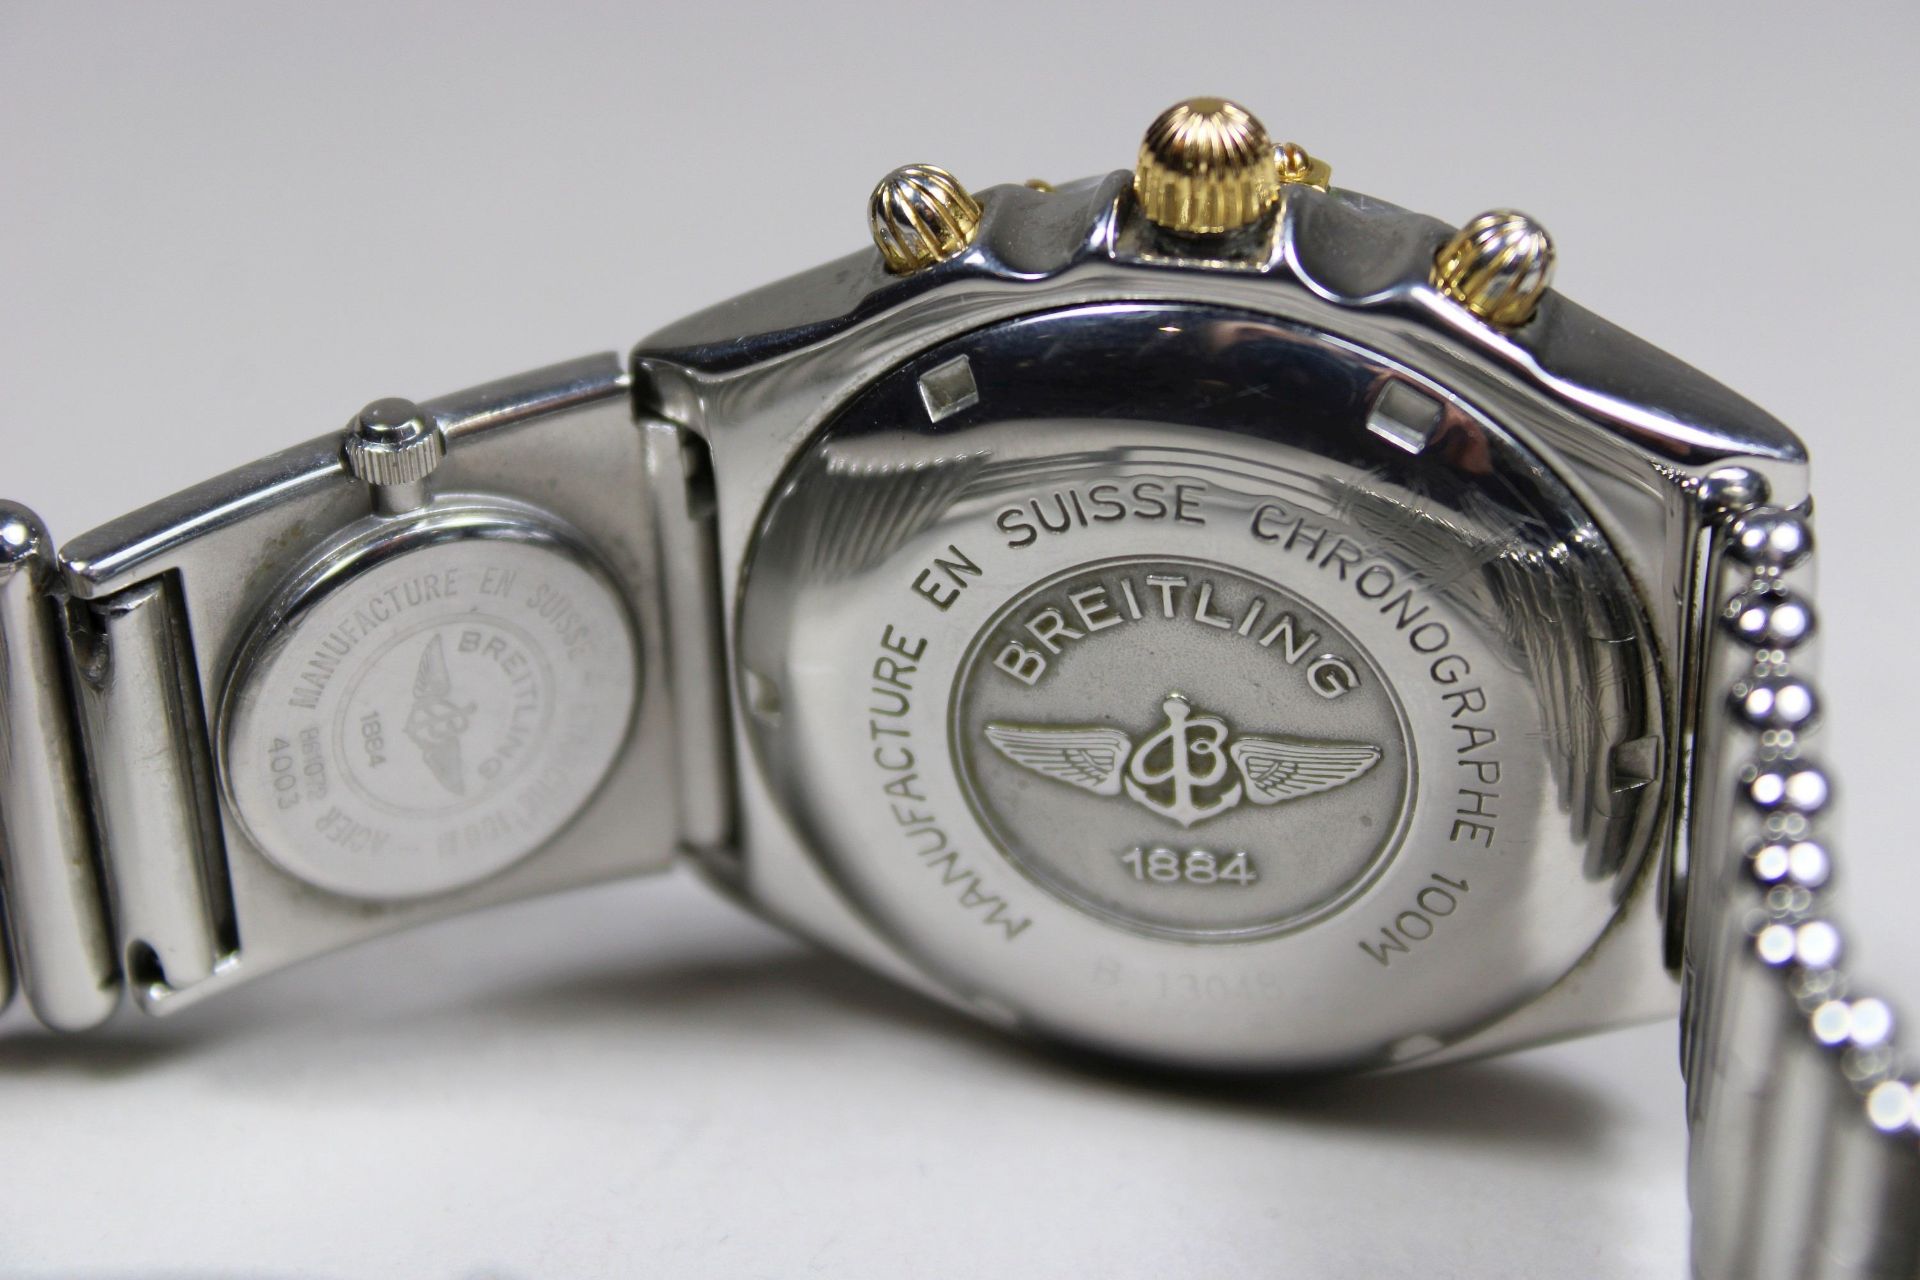 Herrenuhr Breitling Chronomat UTC Modul an Roleuaxband, Ref. B13048 144978, Herstellungsjahr: 1990- - Bild 3 aus 4